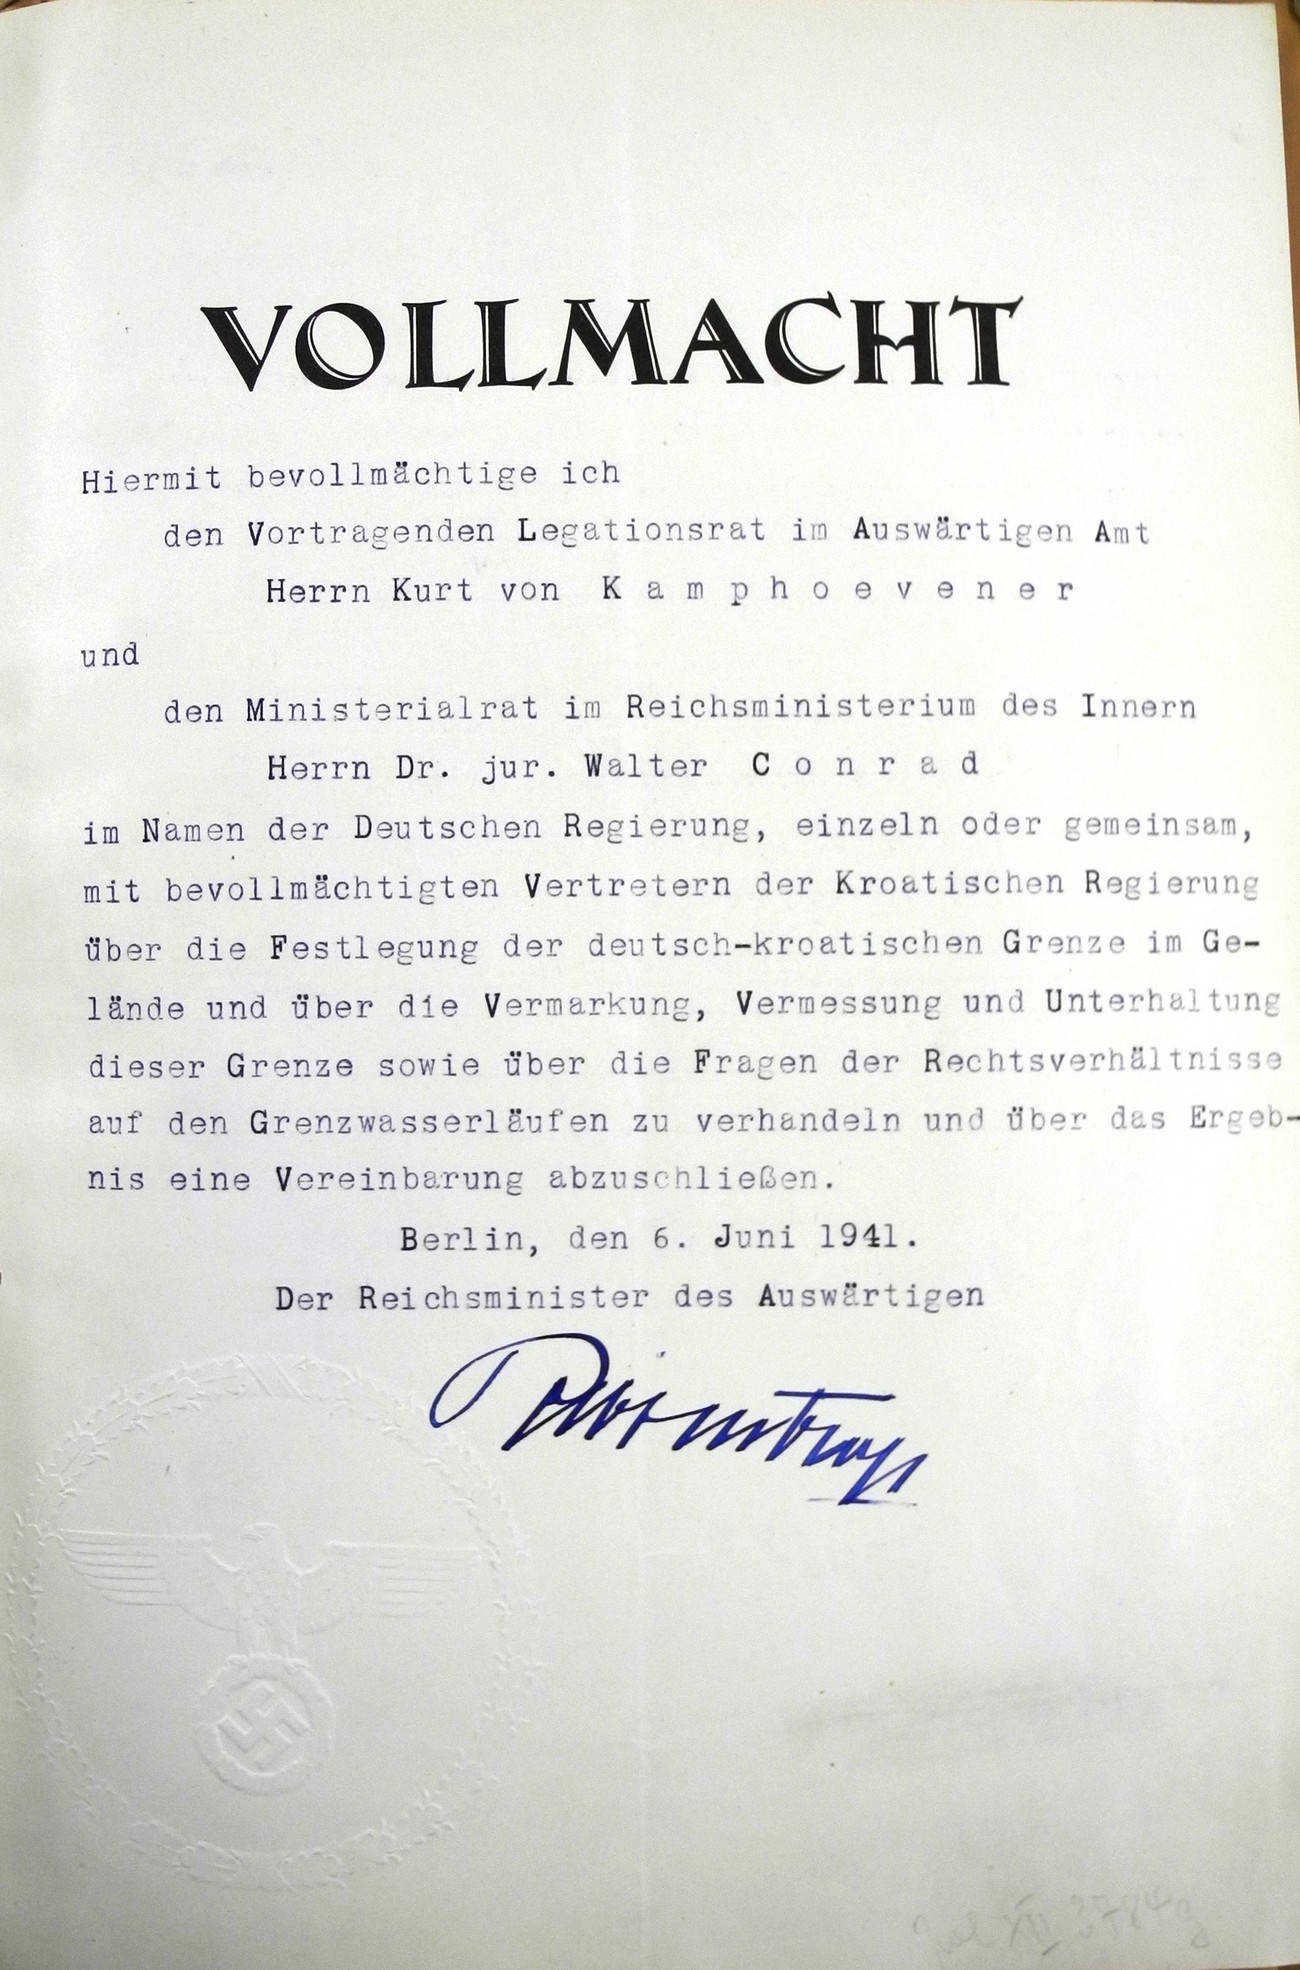 Na fotografiji pooblastilo Joachima von Ribbentropa (minister za zunanje zadeve Nemčije med letoma 1938 in 1945) Kamphoevenerju za vodenje mejnih zadev z NDH, Italijo in Madžarsko. Njegove odločitve so v veliki meri vplivale tudi na mejna vprašanja v okolici Rogaške Slatine. Politisches Archiv des Auswärtigen Amts, Berlin.